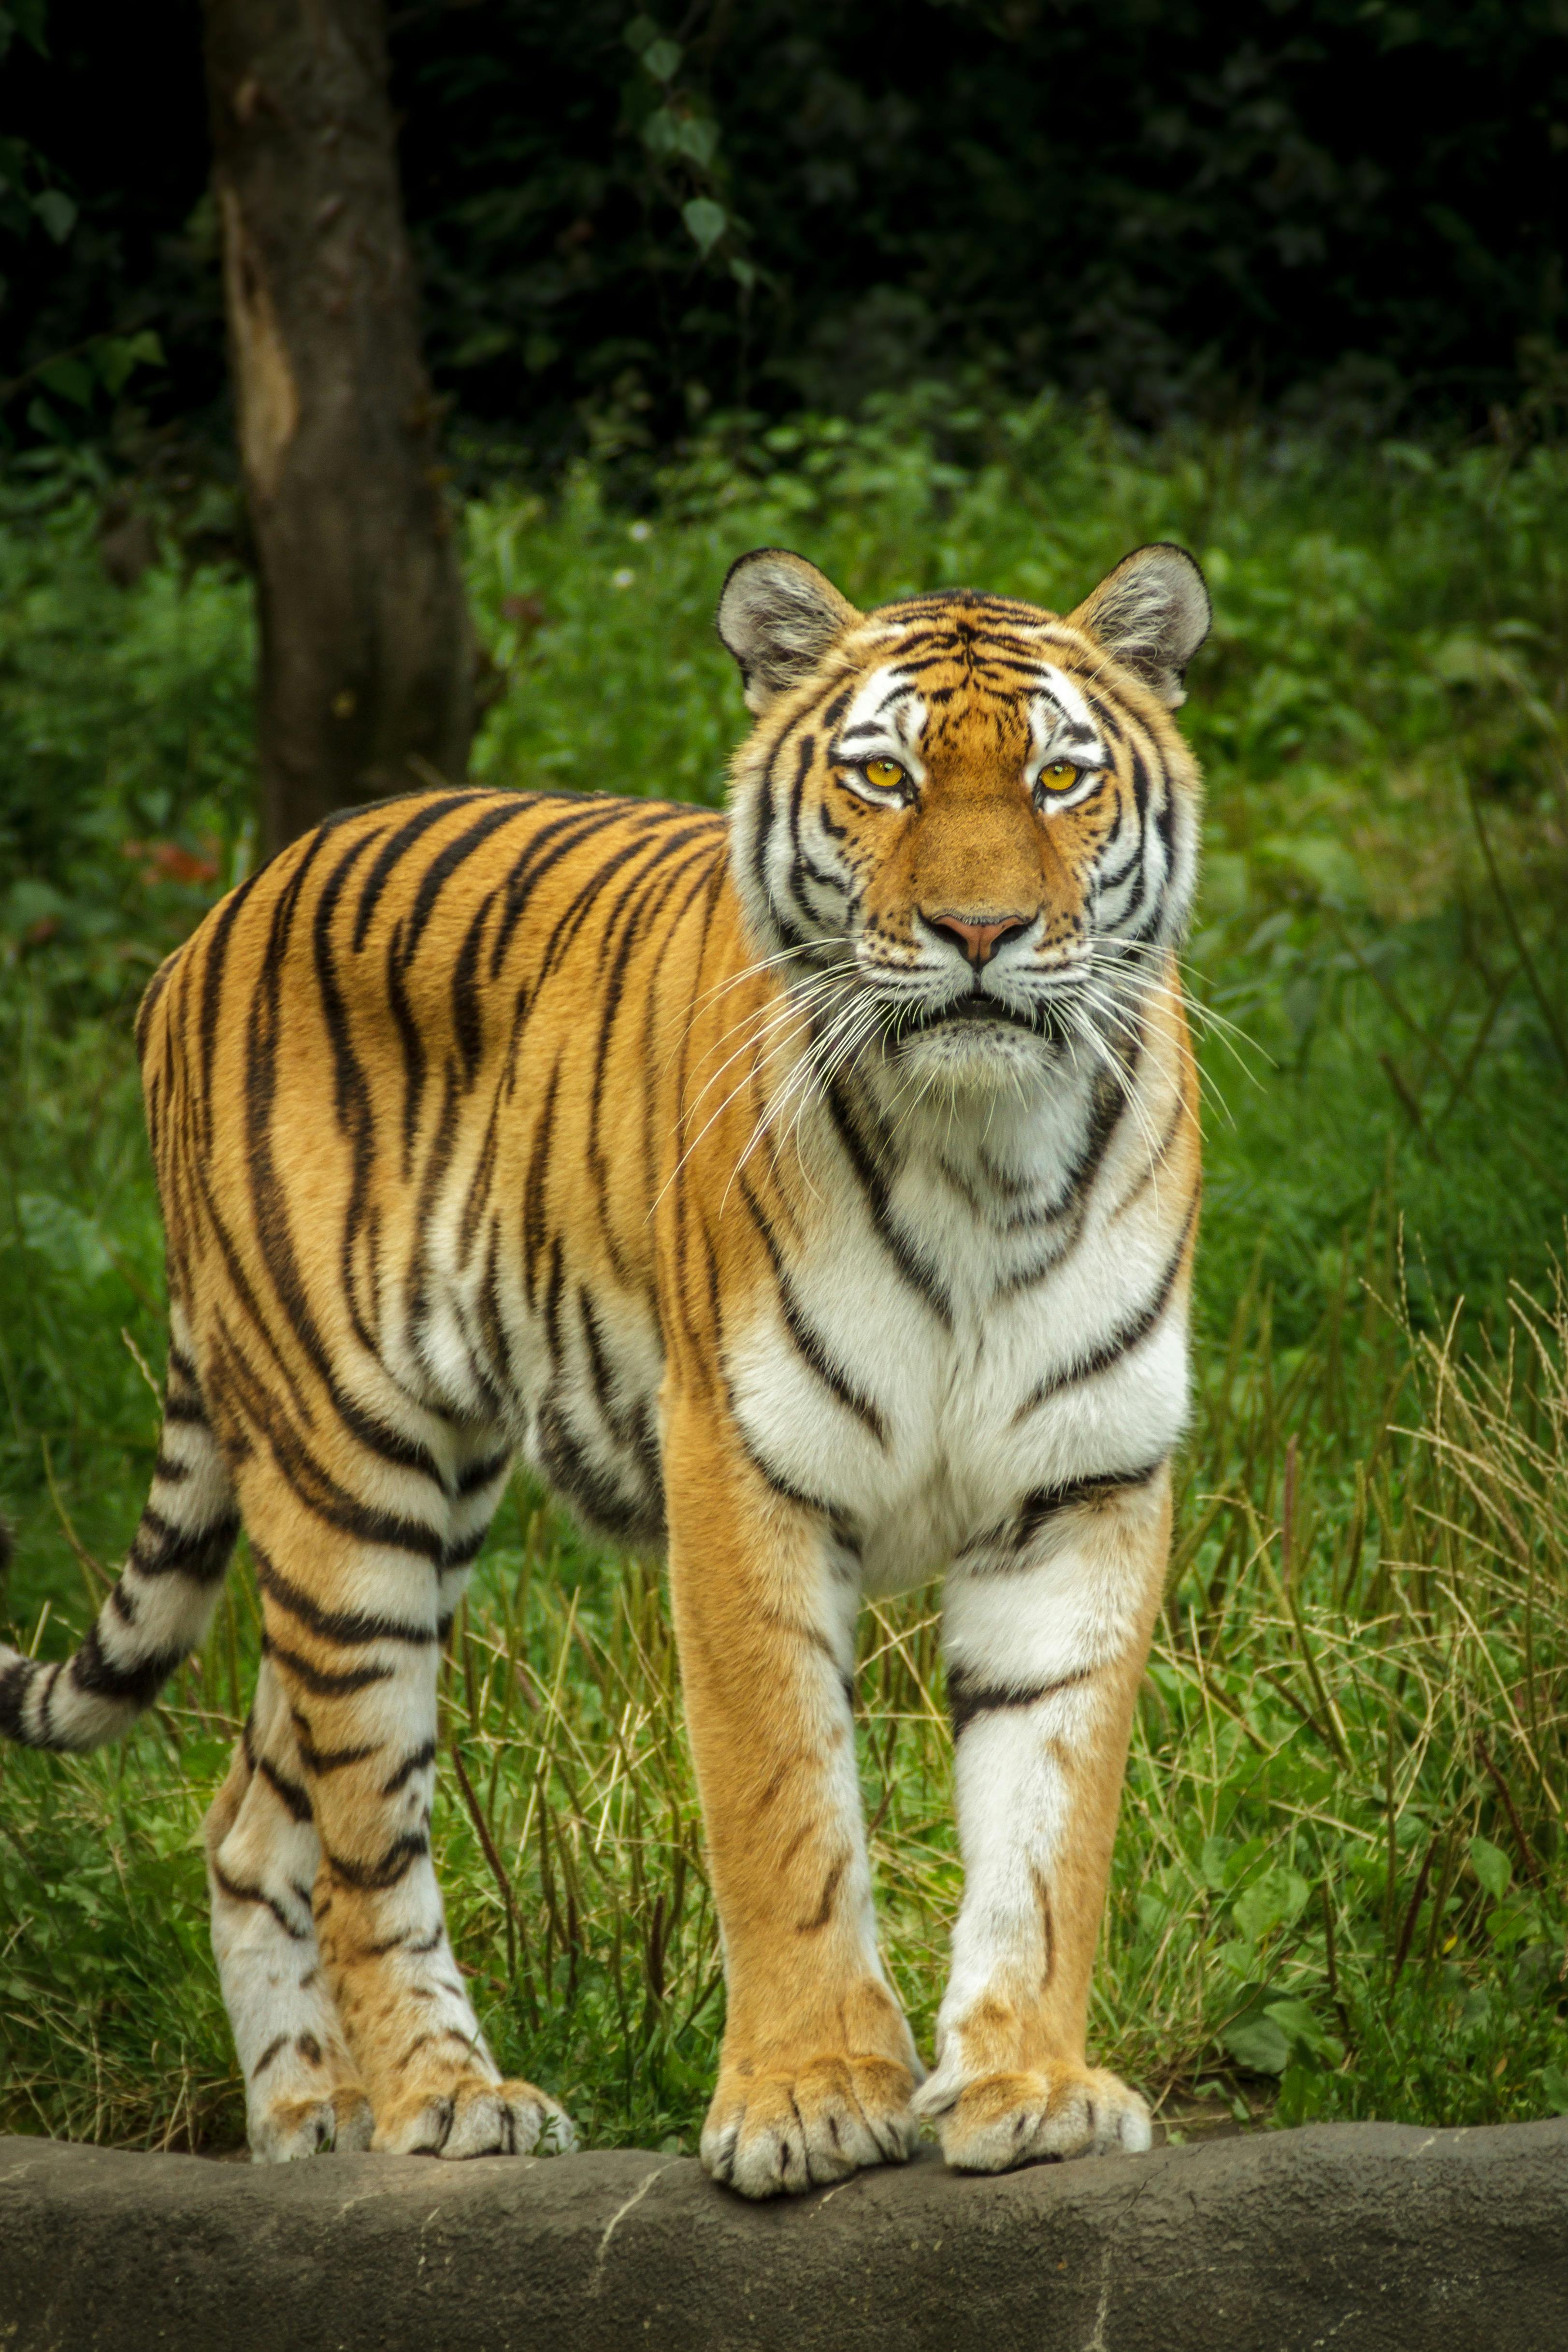 TOP 60+ Hình ảnh hổ 3D đẹp, siêu chất, siêu ngầu đầy dũng mãnh, thể hiện cá  tính mạnh mẽ 20 | Tiger art, Tiger pictures, Tiger images